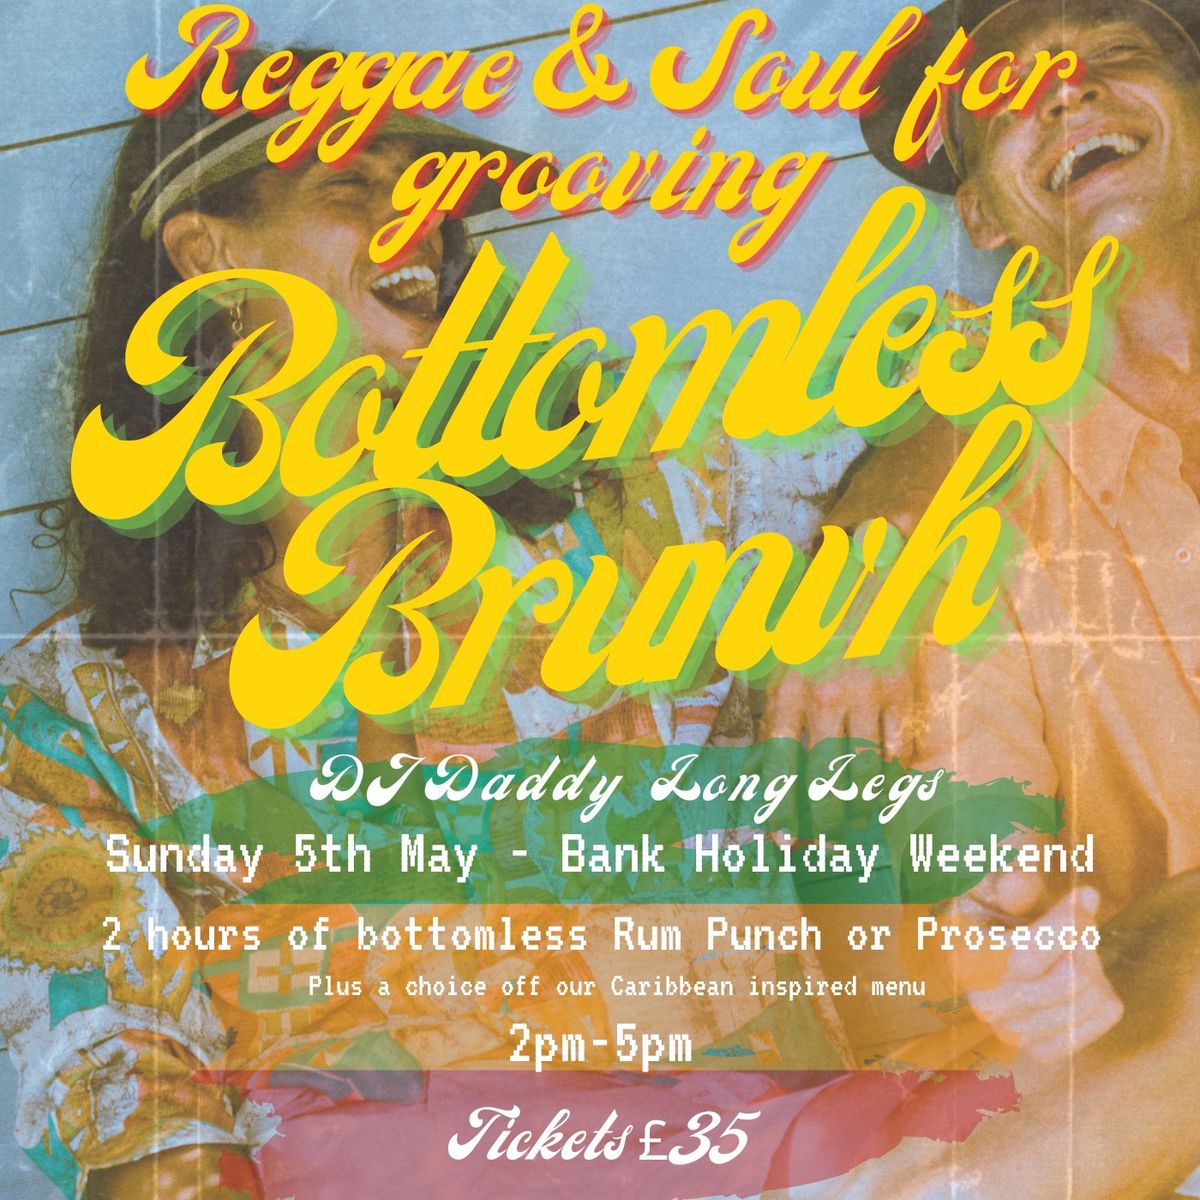 Reggae & Soul for Grooving - Bottomless Brunch